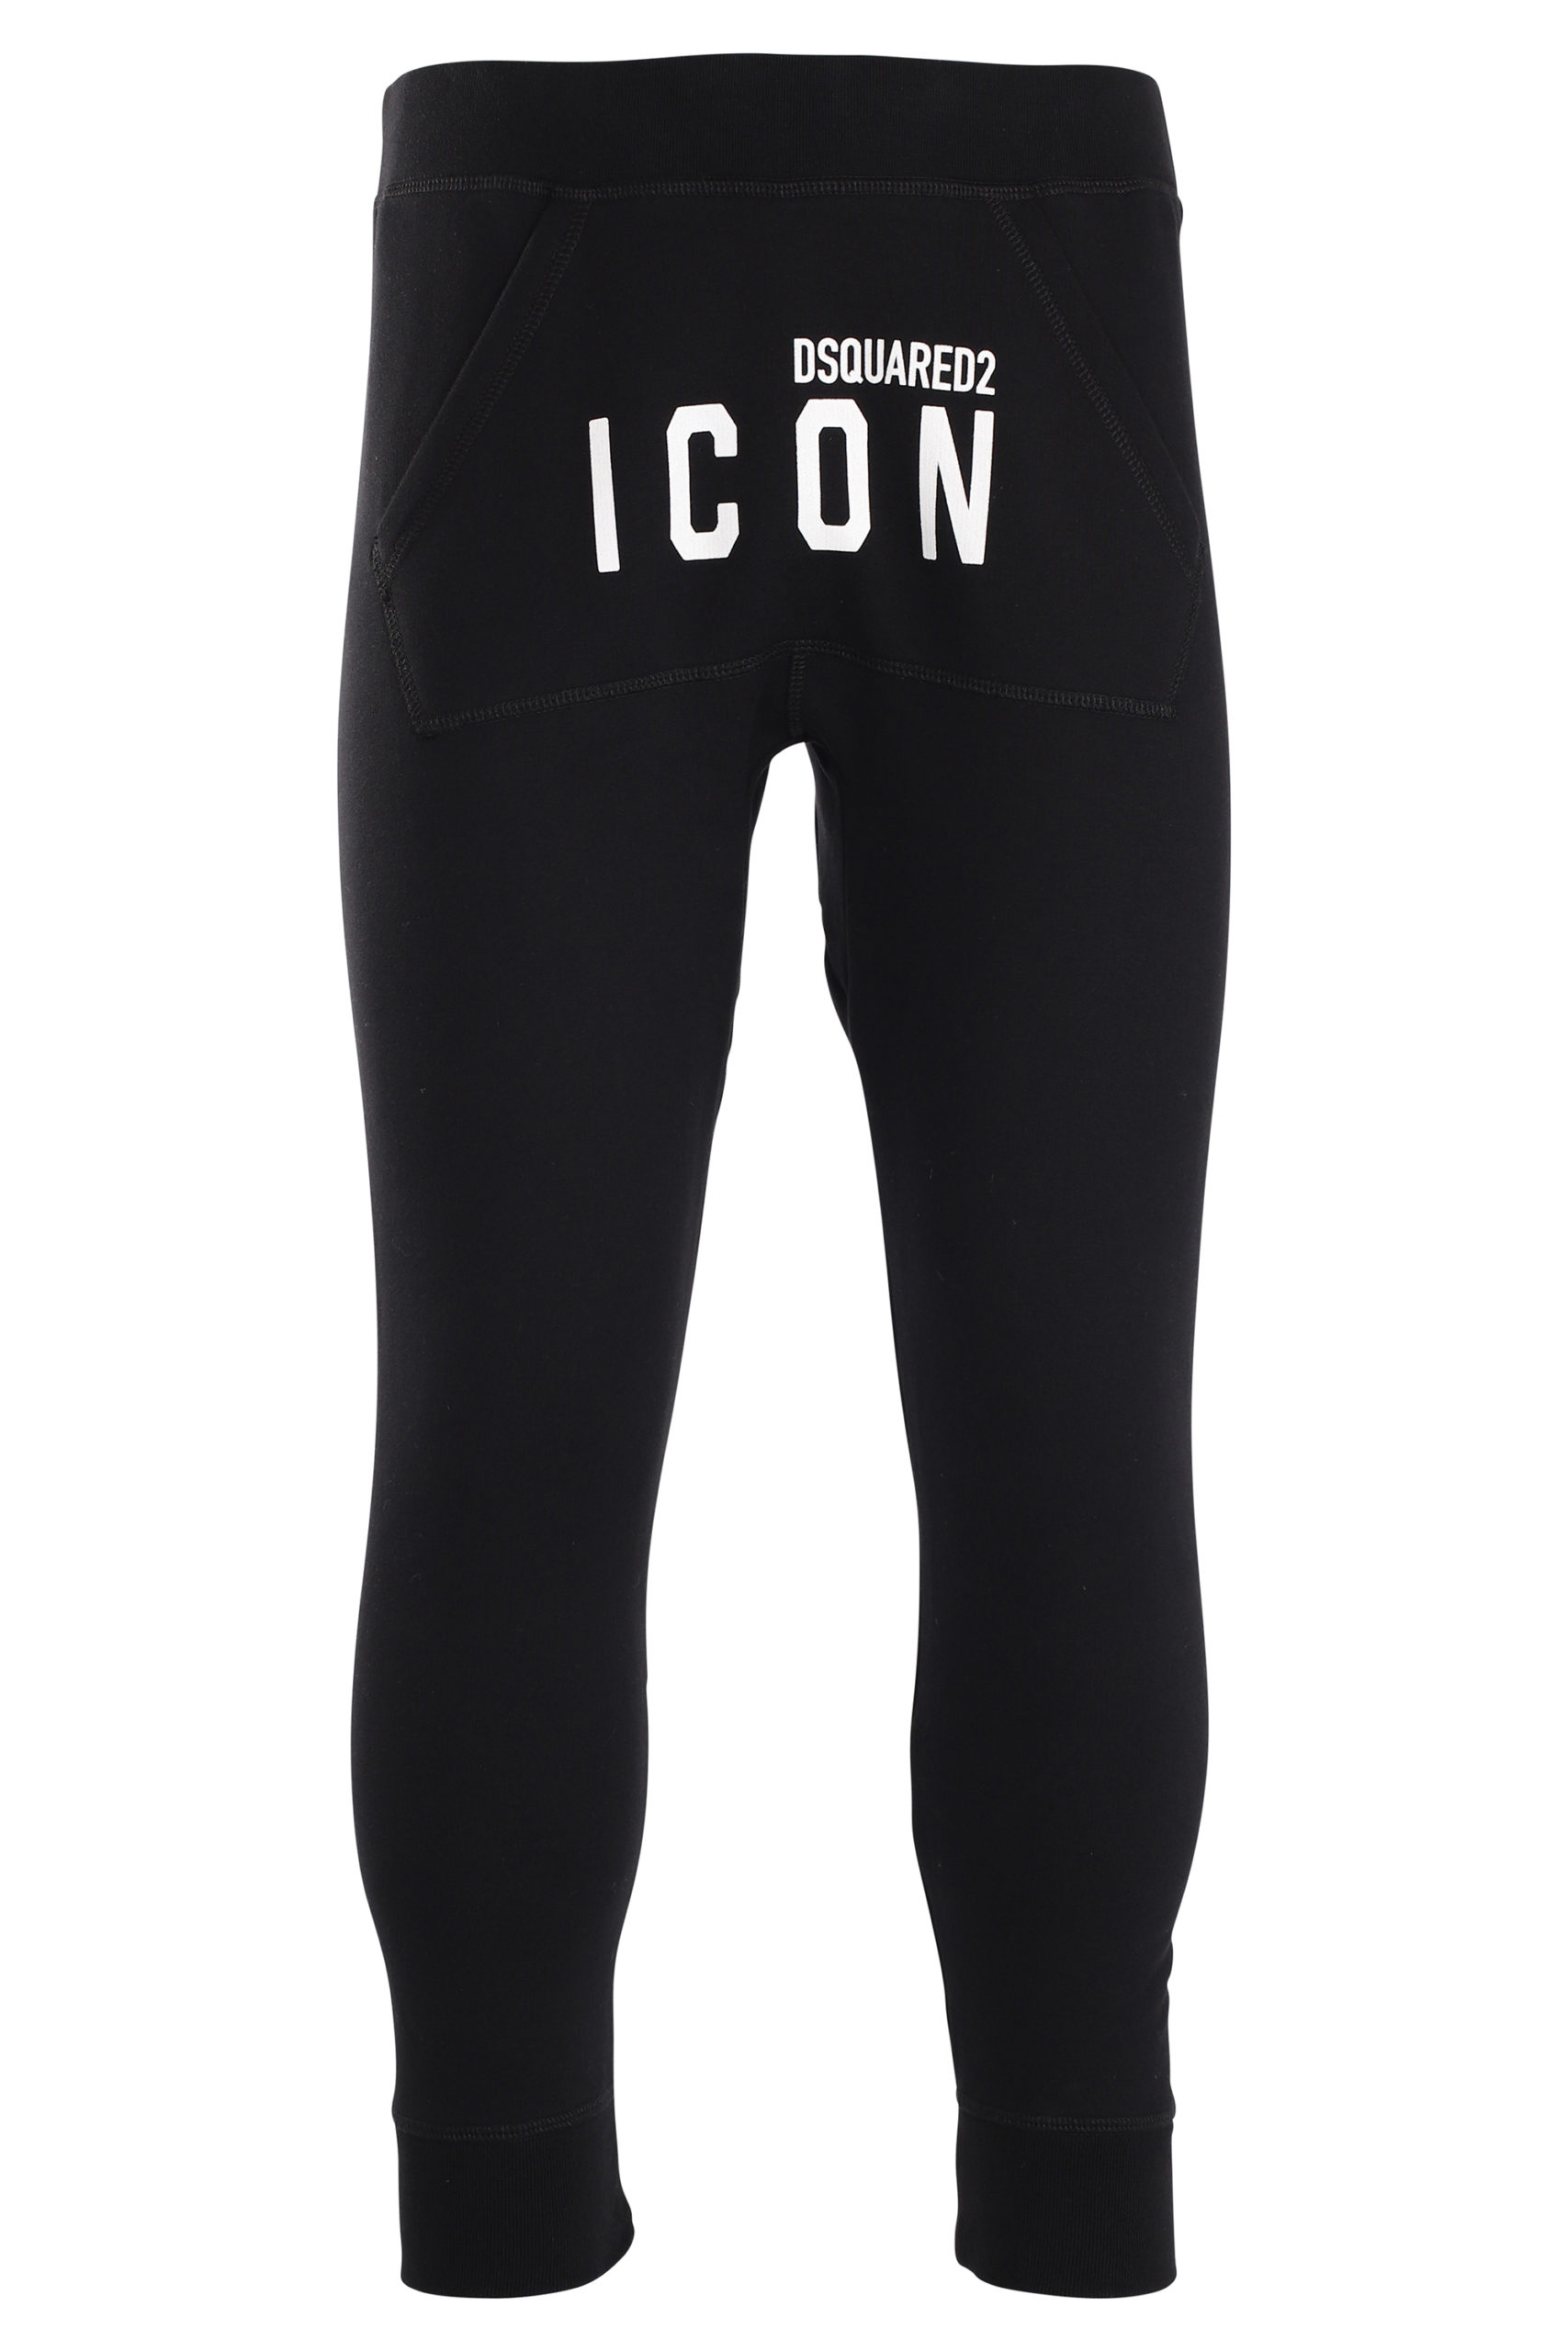 - Pantalón de chándal negro con logo "icon" - BLS Fashion